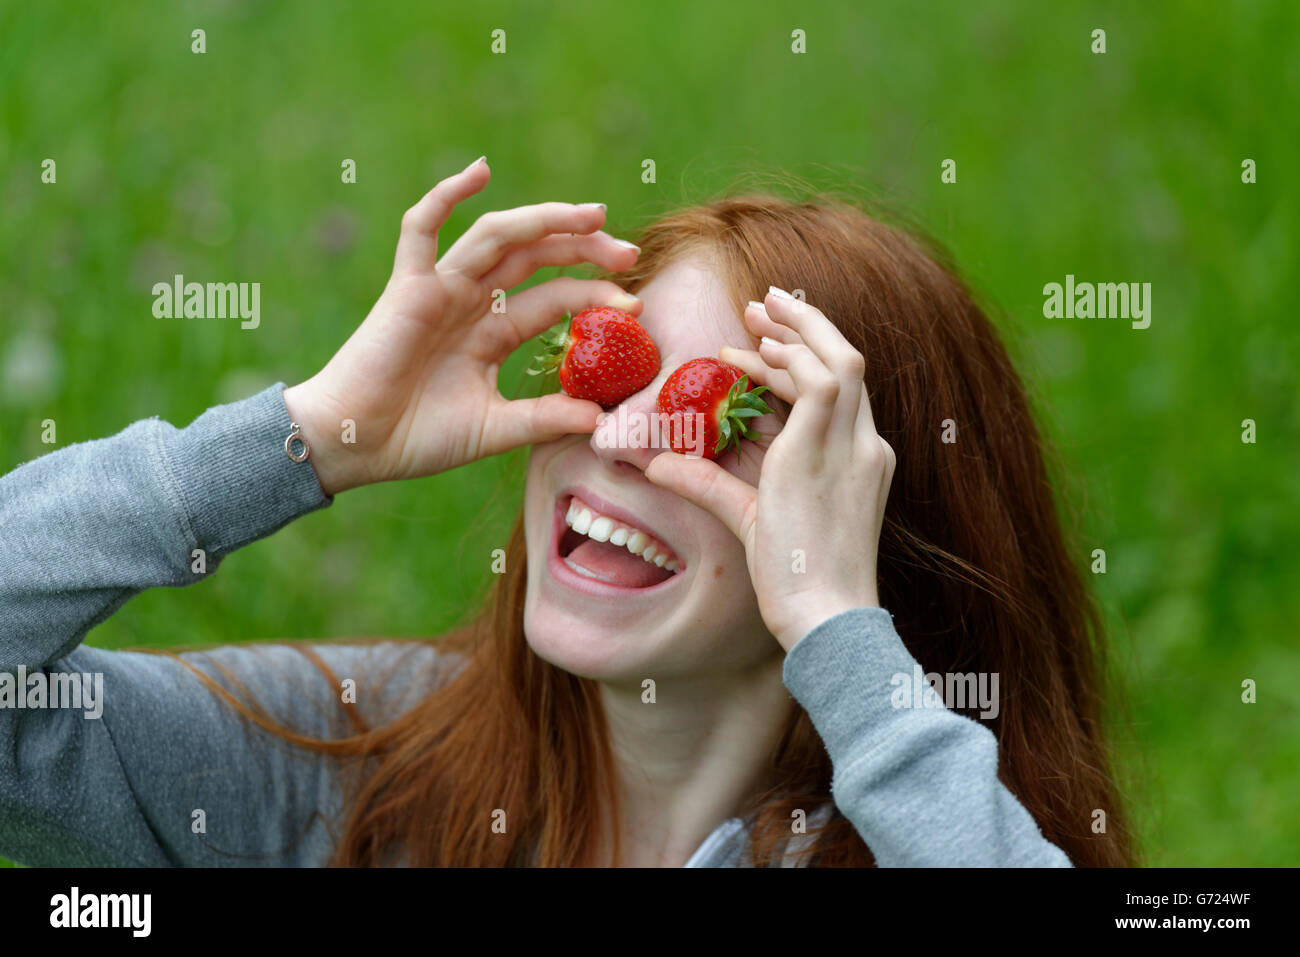 Jeune fille, une adolescente avec des fraises, devant les yeux, Bavière, Allemagne Banque D'Images